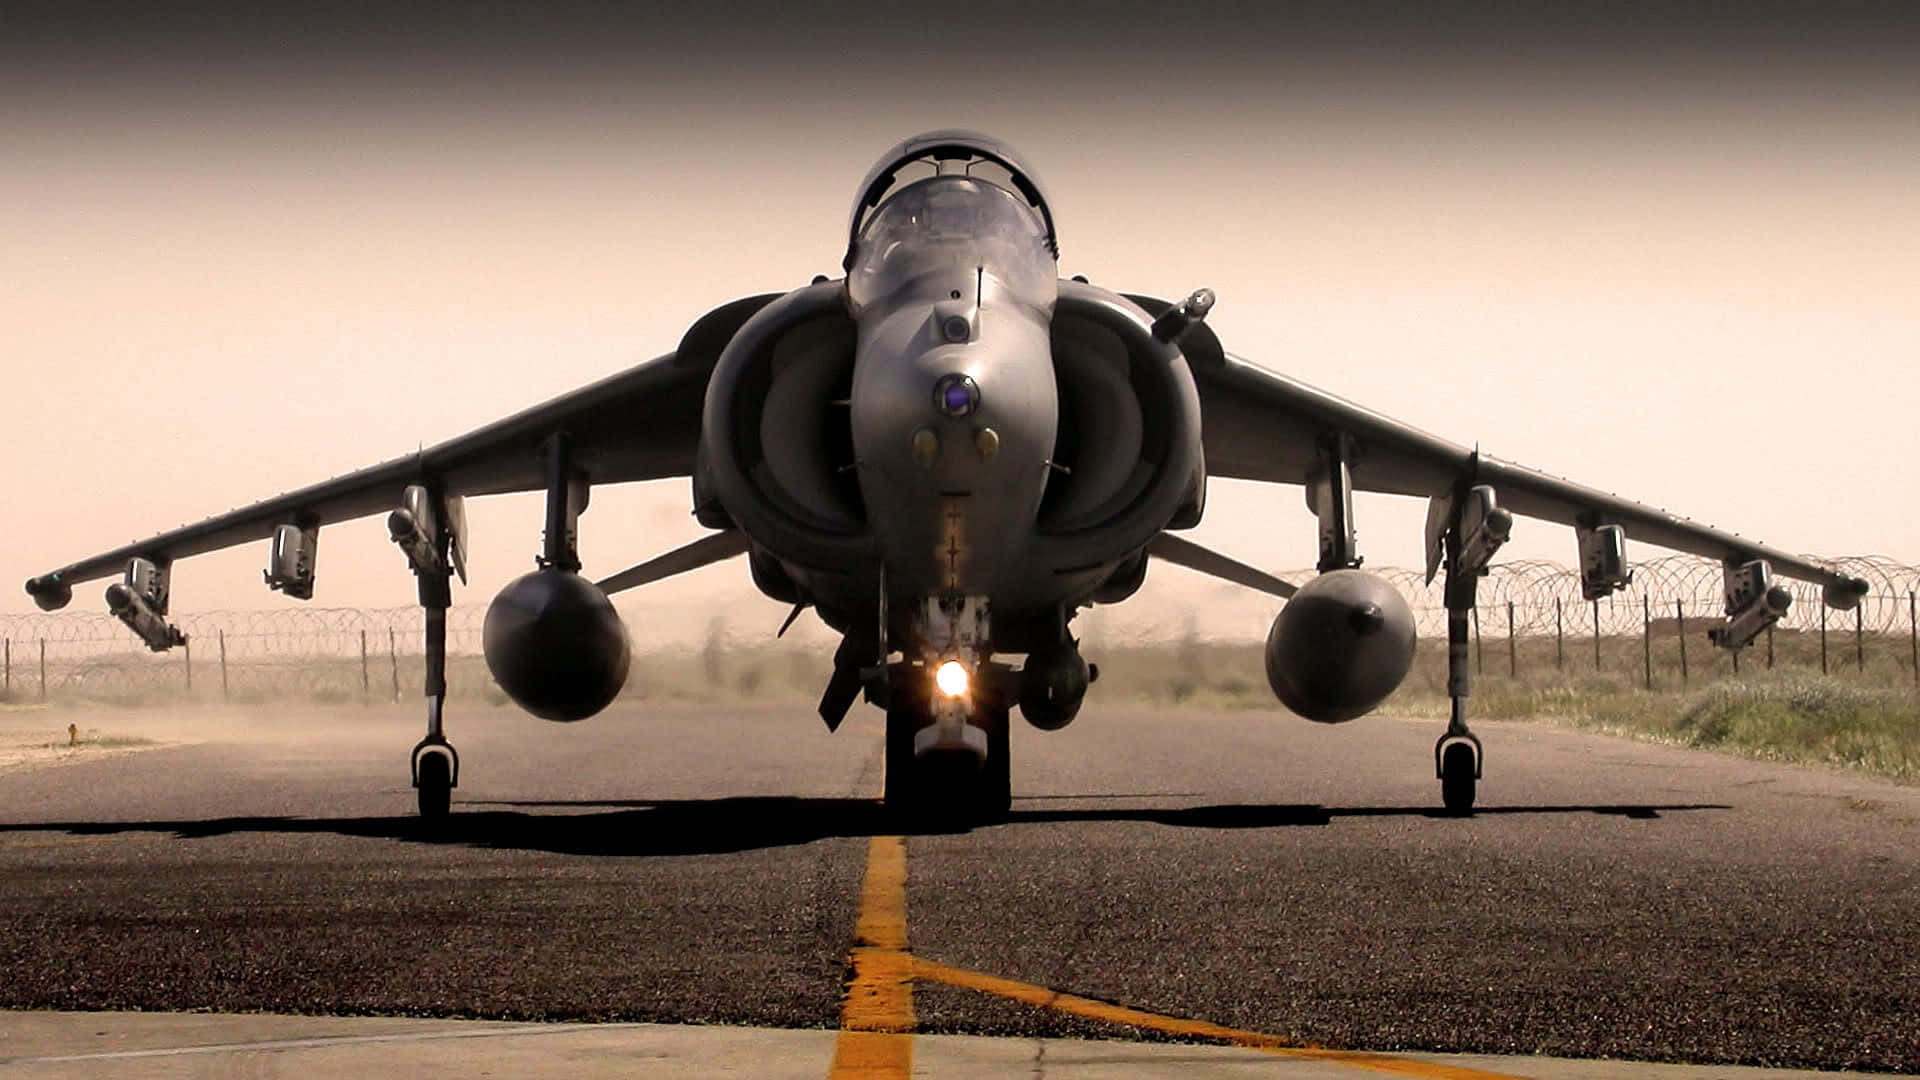 1080pjumbo Jets Av-8b Harrier Ii Bakgrundsbild.